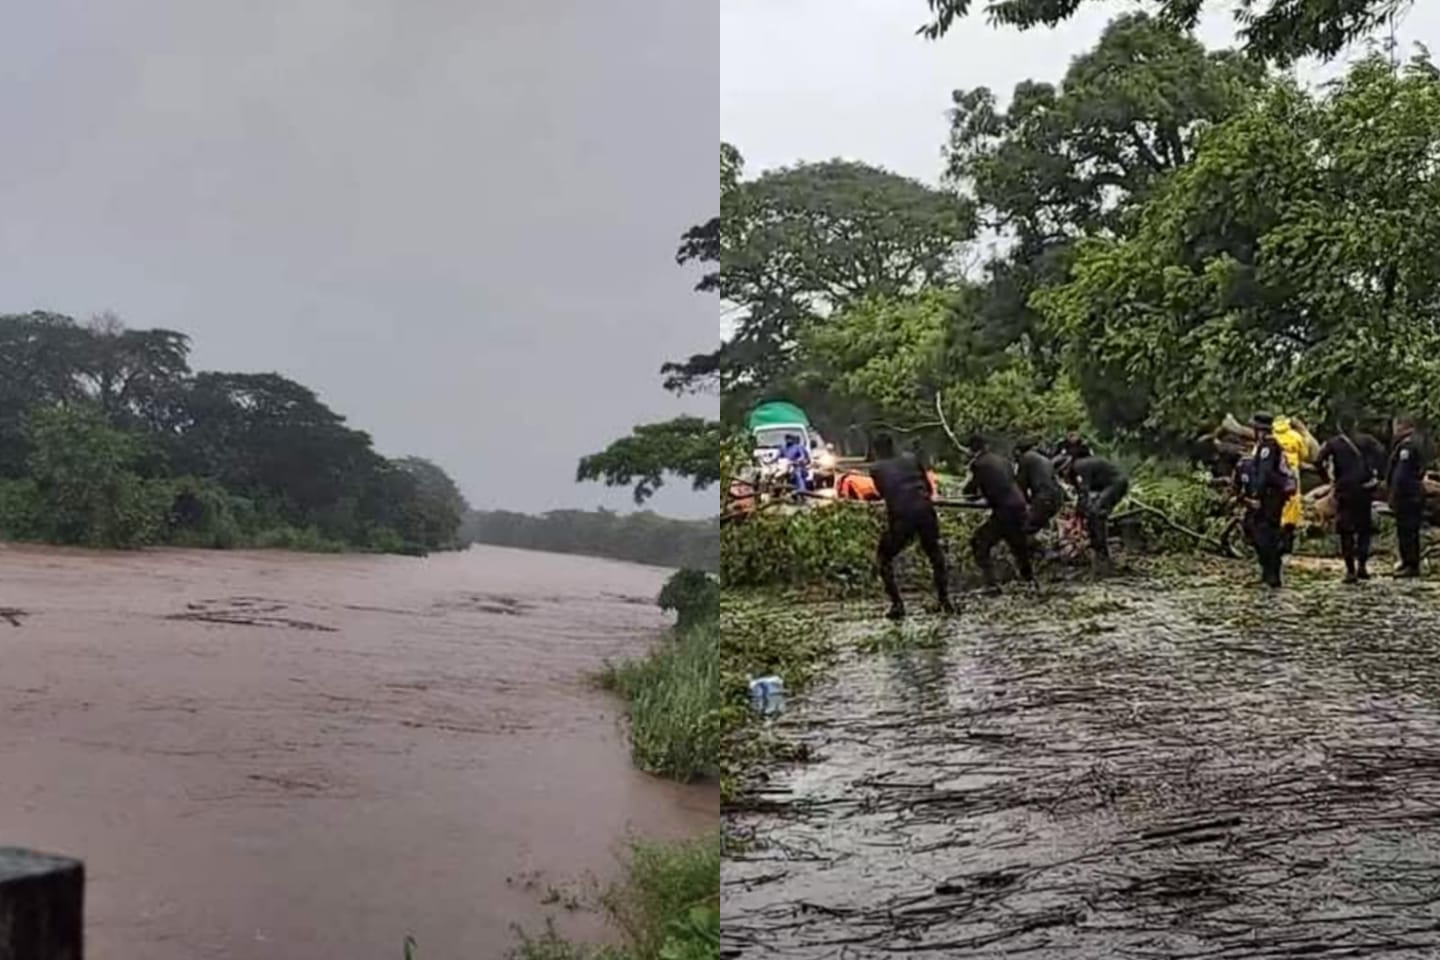 tormenta bonnie daños en nicaragua